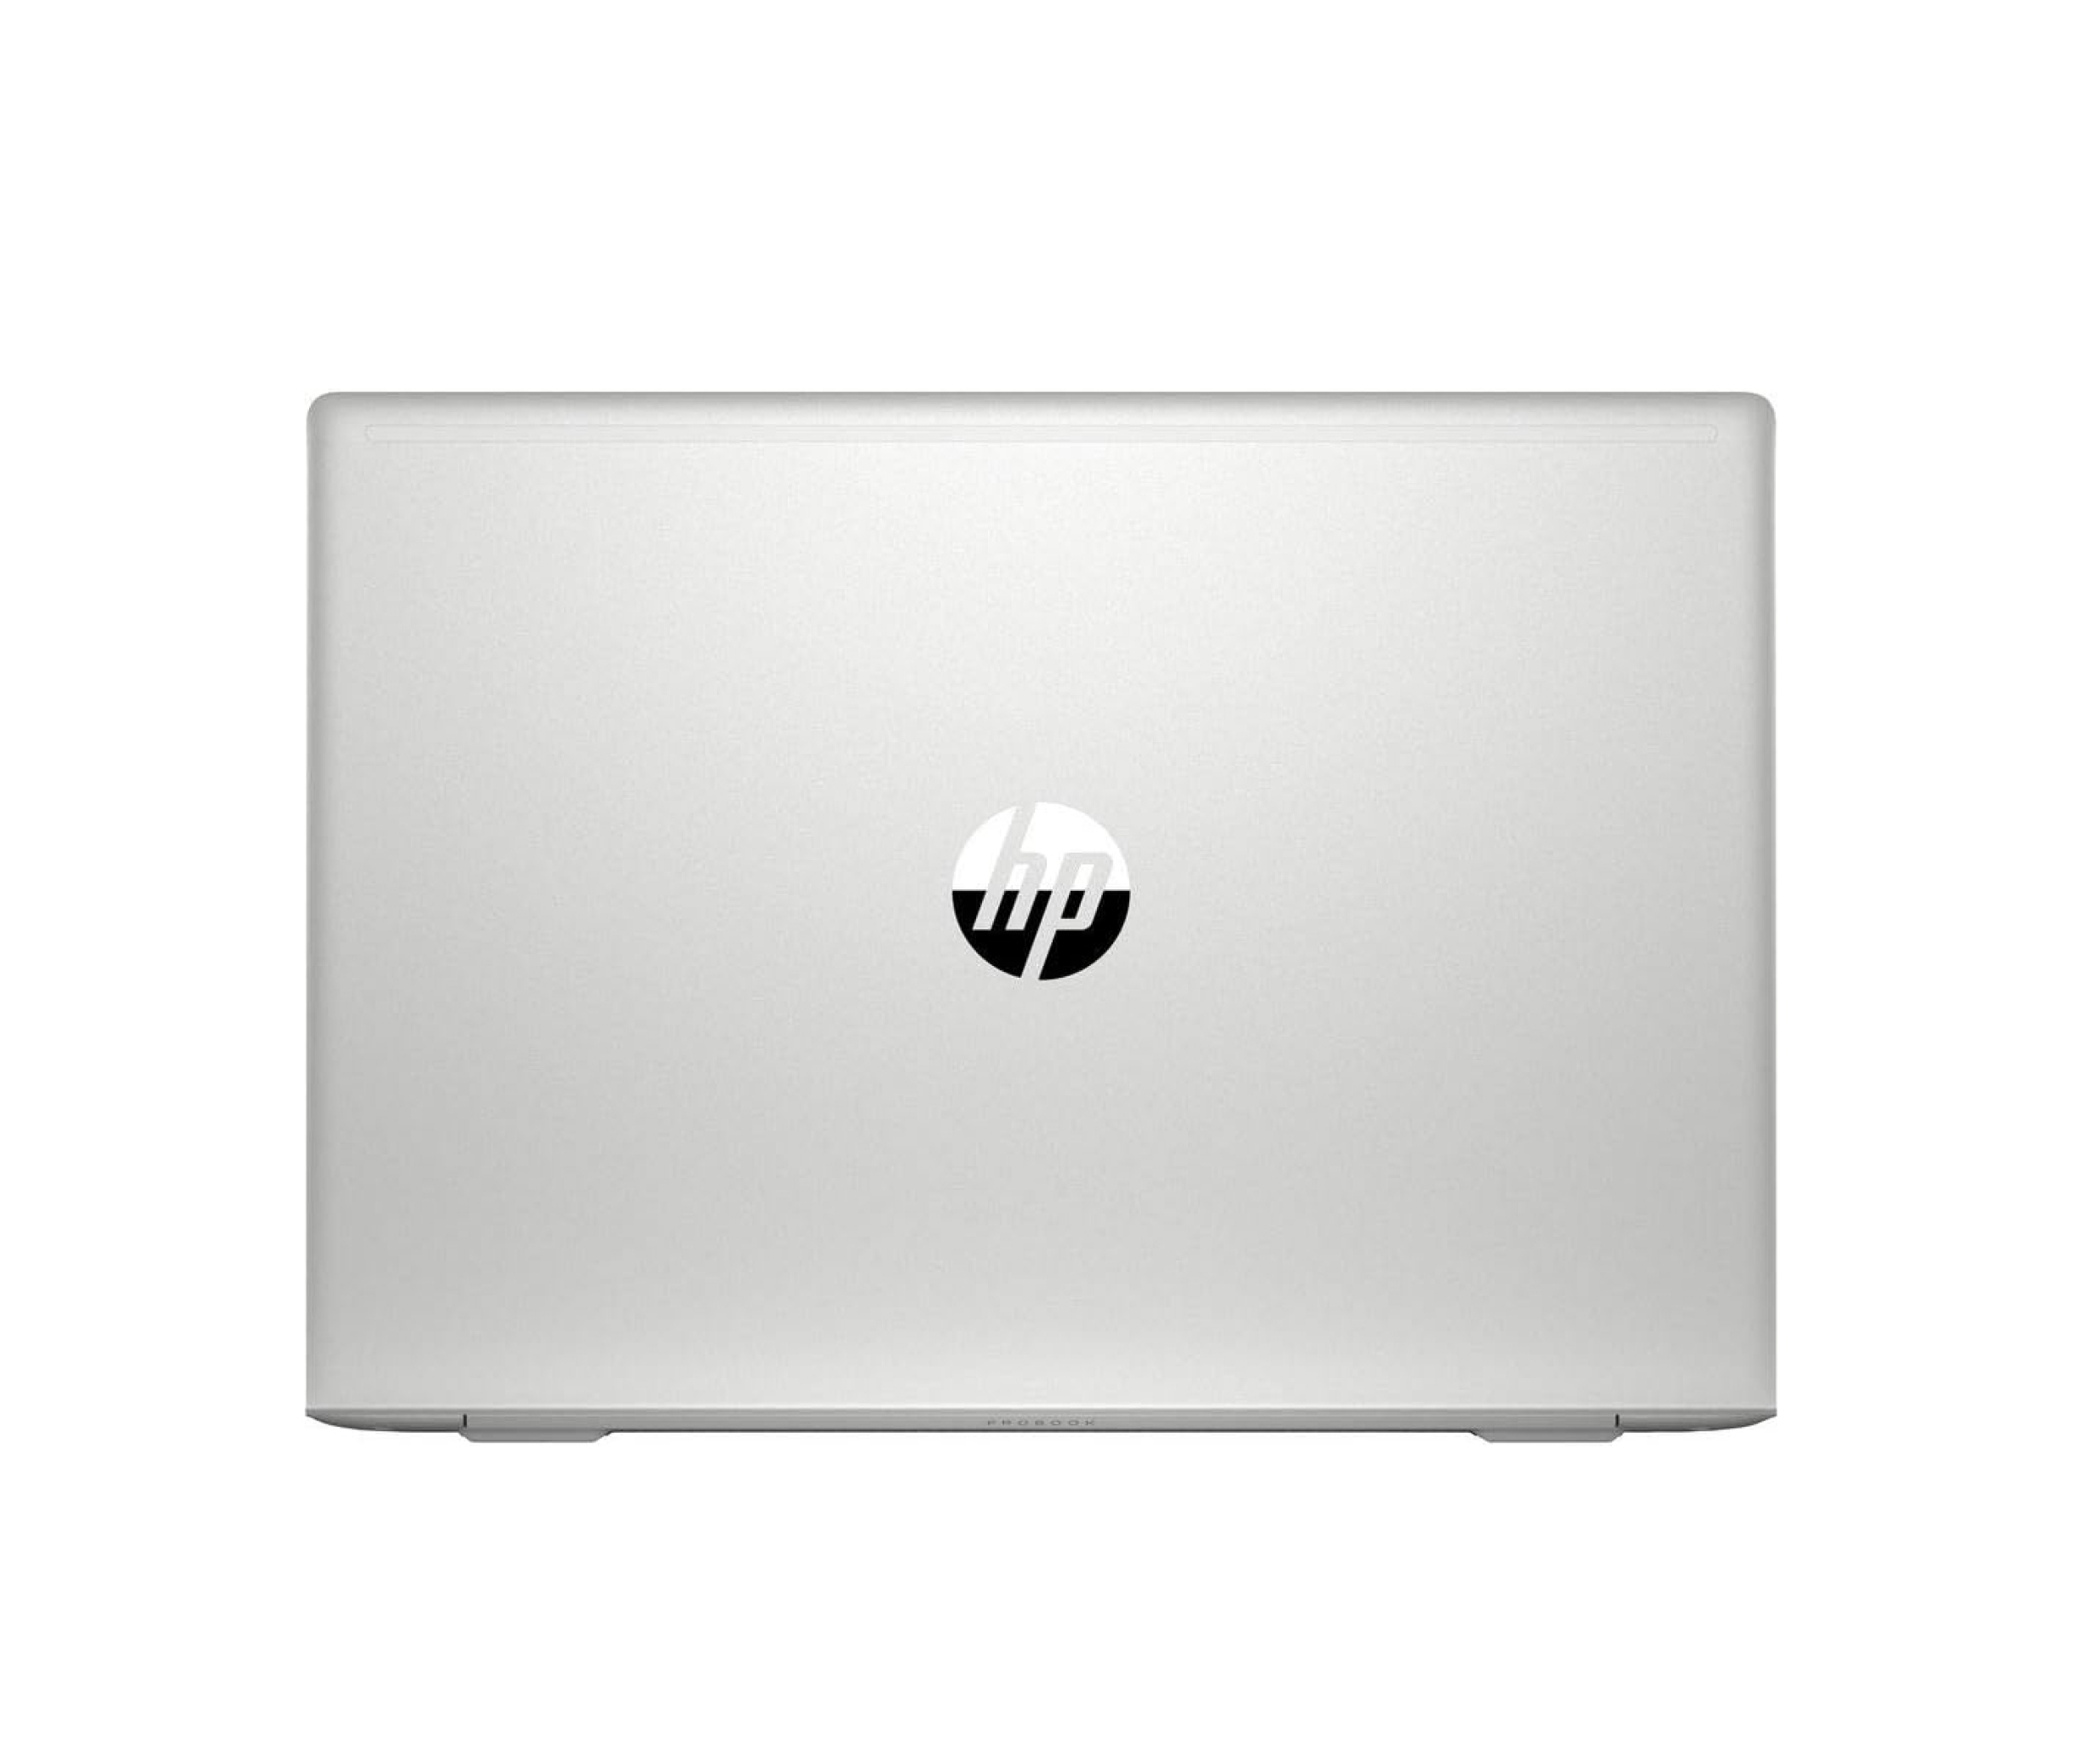  خرید لپ تاپ HP ProBook 455 G7 - R5 4500U | لاکچری لپ تاپ 